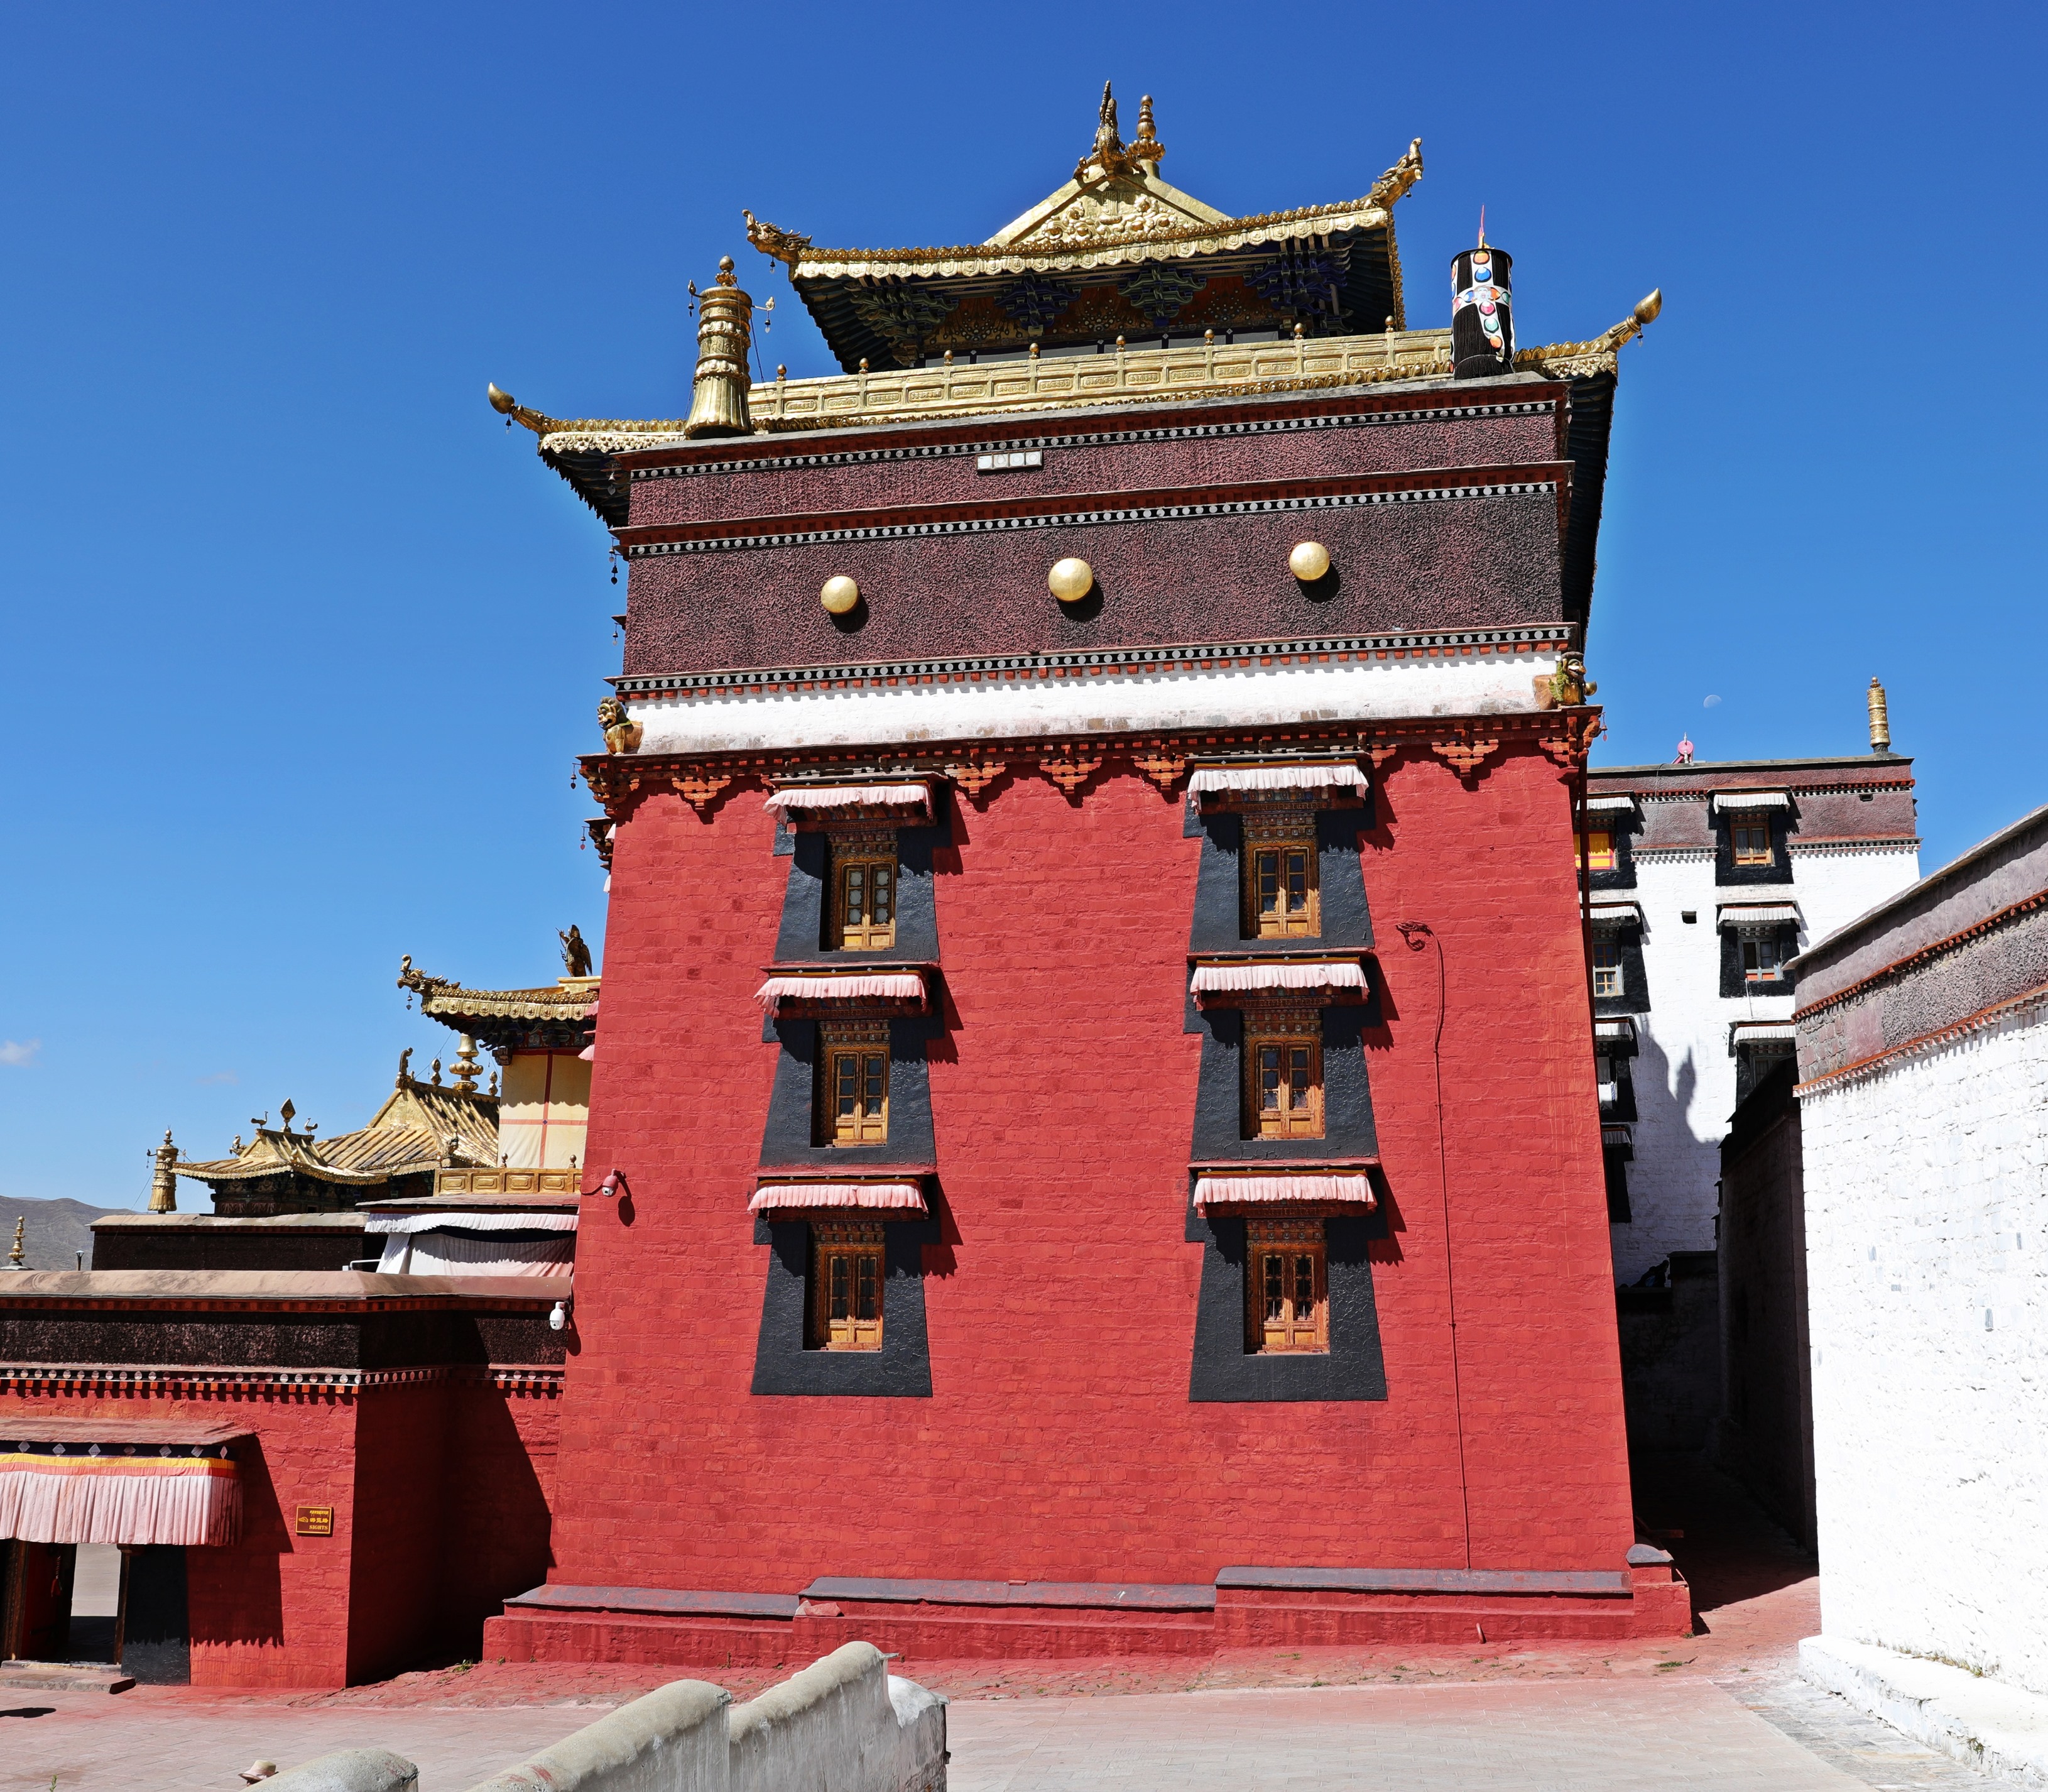 Tashi Lhunpo Gompa (Monastery), Tibet